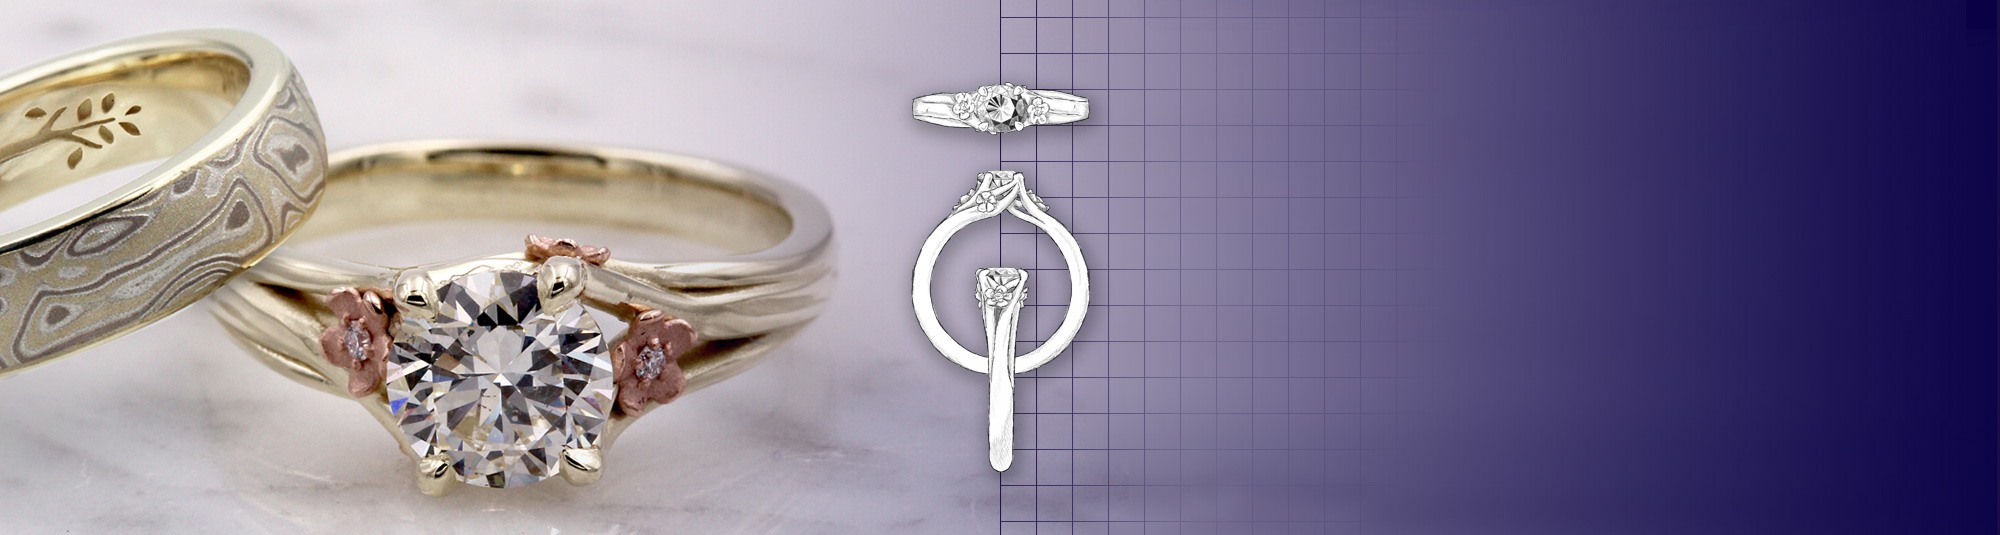 Dood in de wereld Noodlottig Gelijkwaardig Design Your Own Unique Engagement Rings, Custom Wedding Band | Krikawa